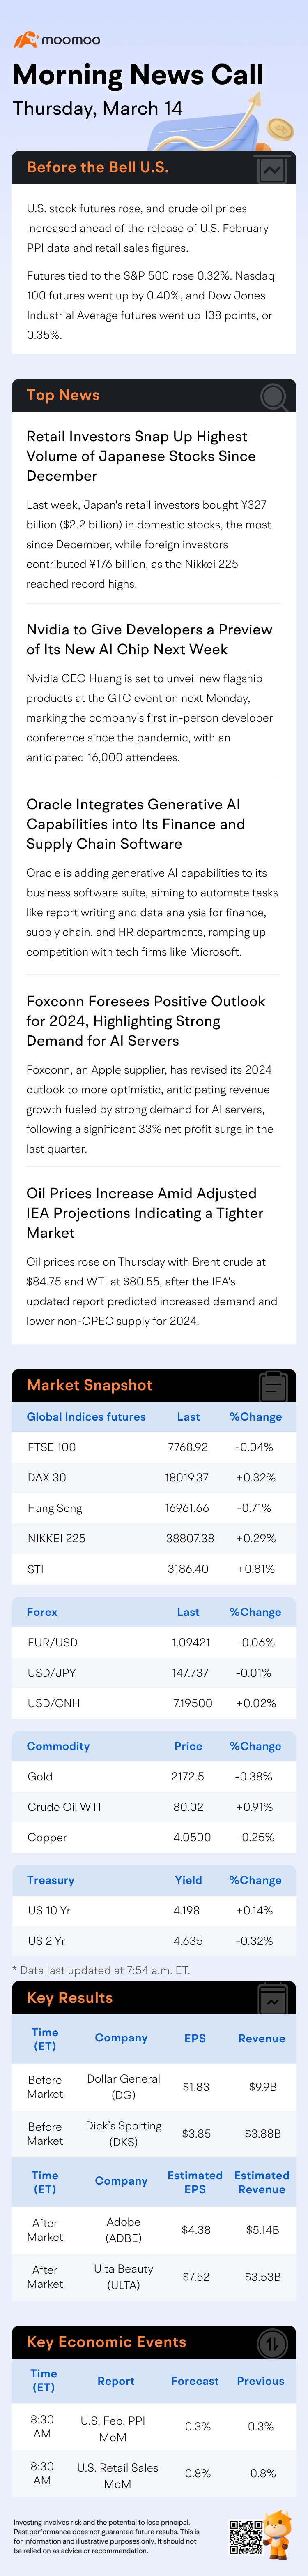 早晨新聞通話 | 美國股票期貨和原油價格在 PPI 數據發布前上漲